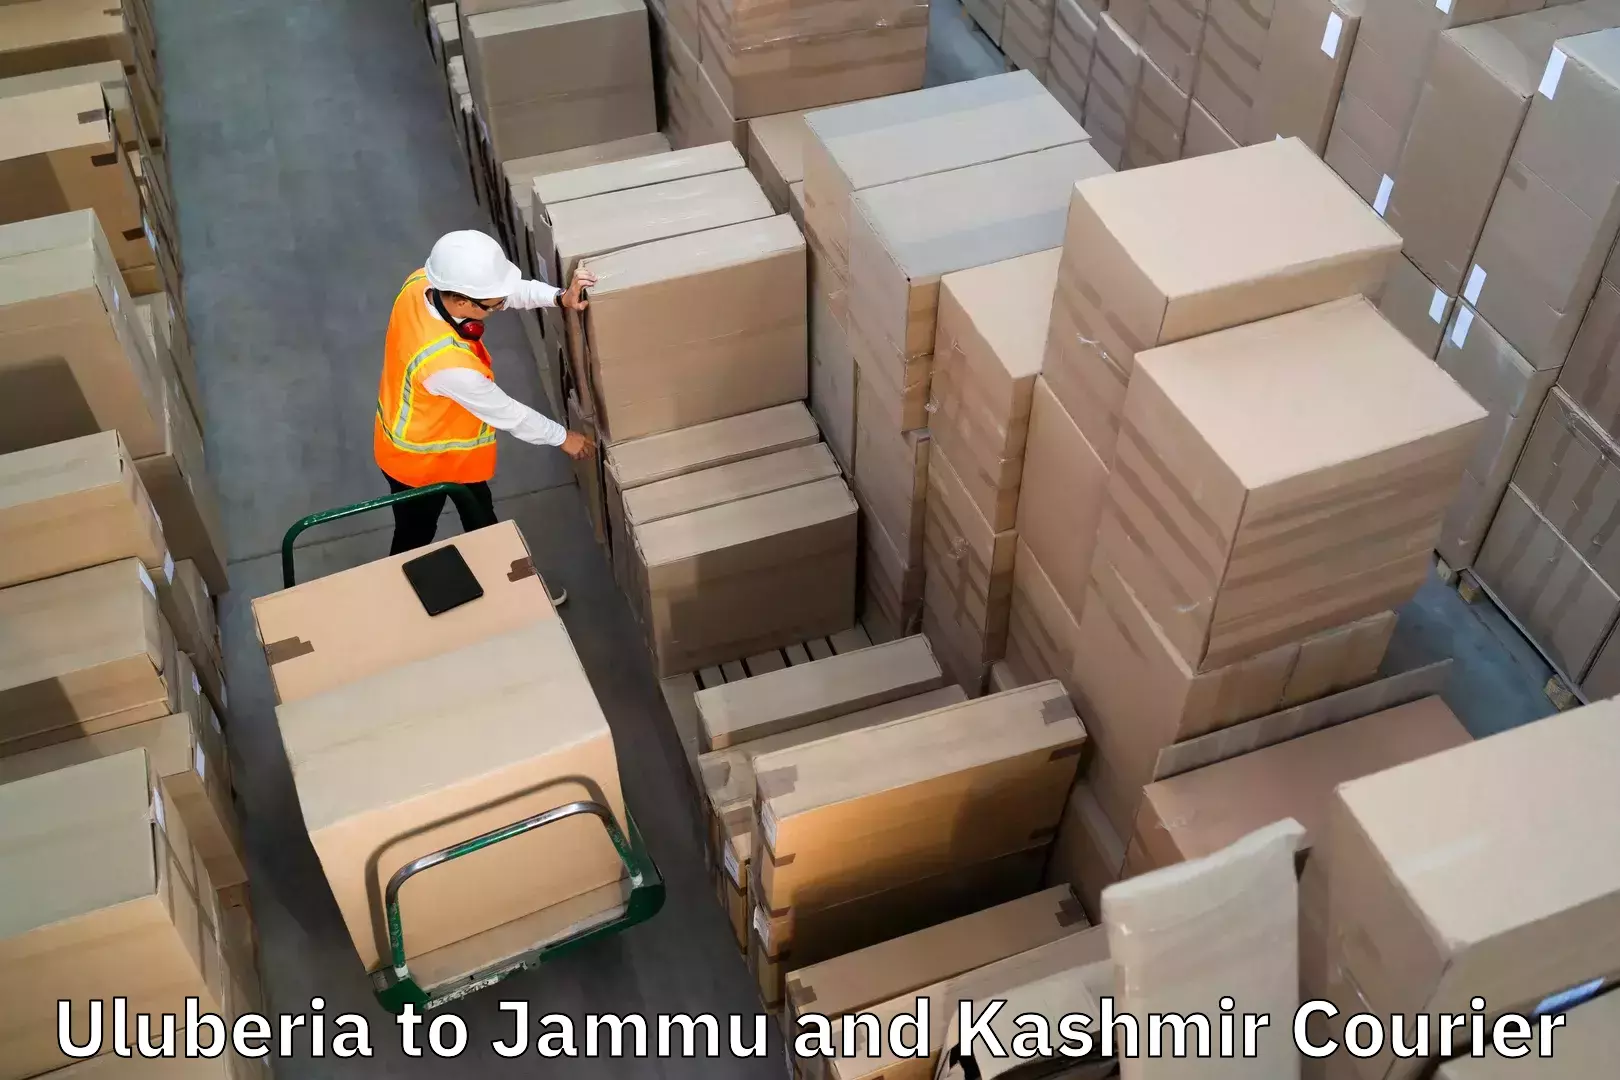 Luggage shipment specialists Uluberia to Katra